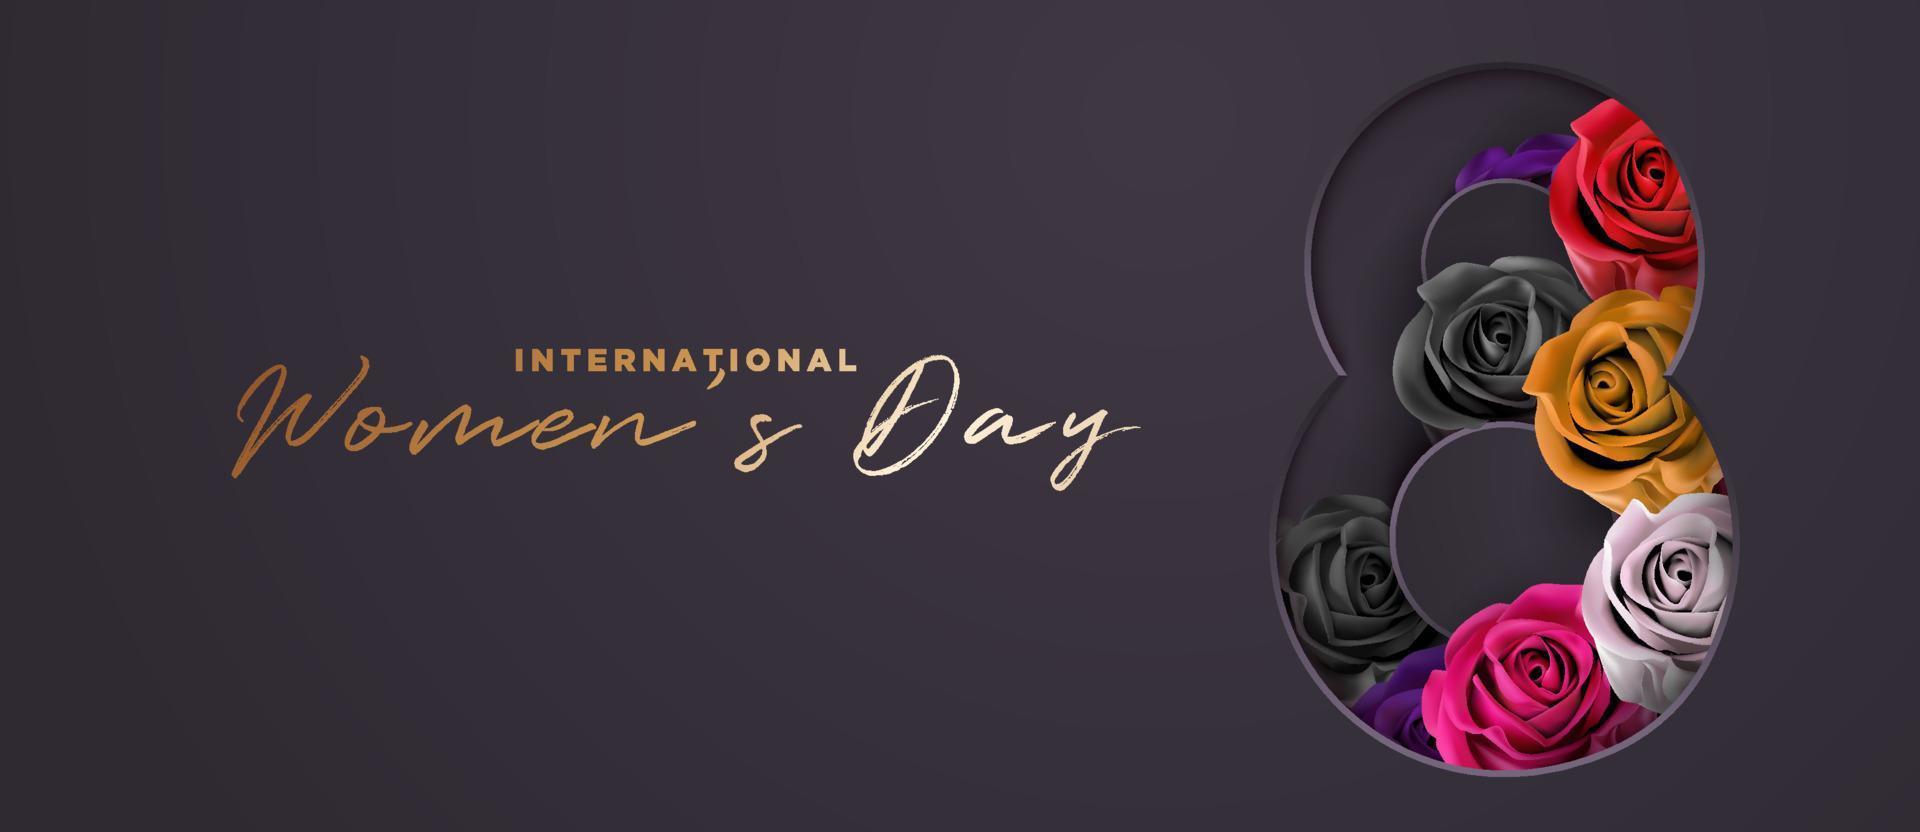 eleganter luxus schwarz und gold mit bunter rosenblume 8. märz internationaler frauentag banner hintergrundvorlage vektor